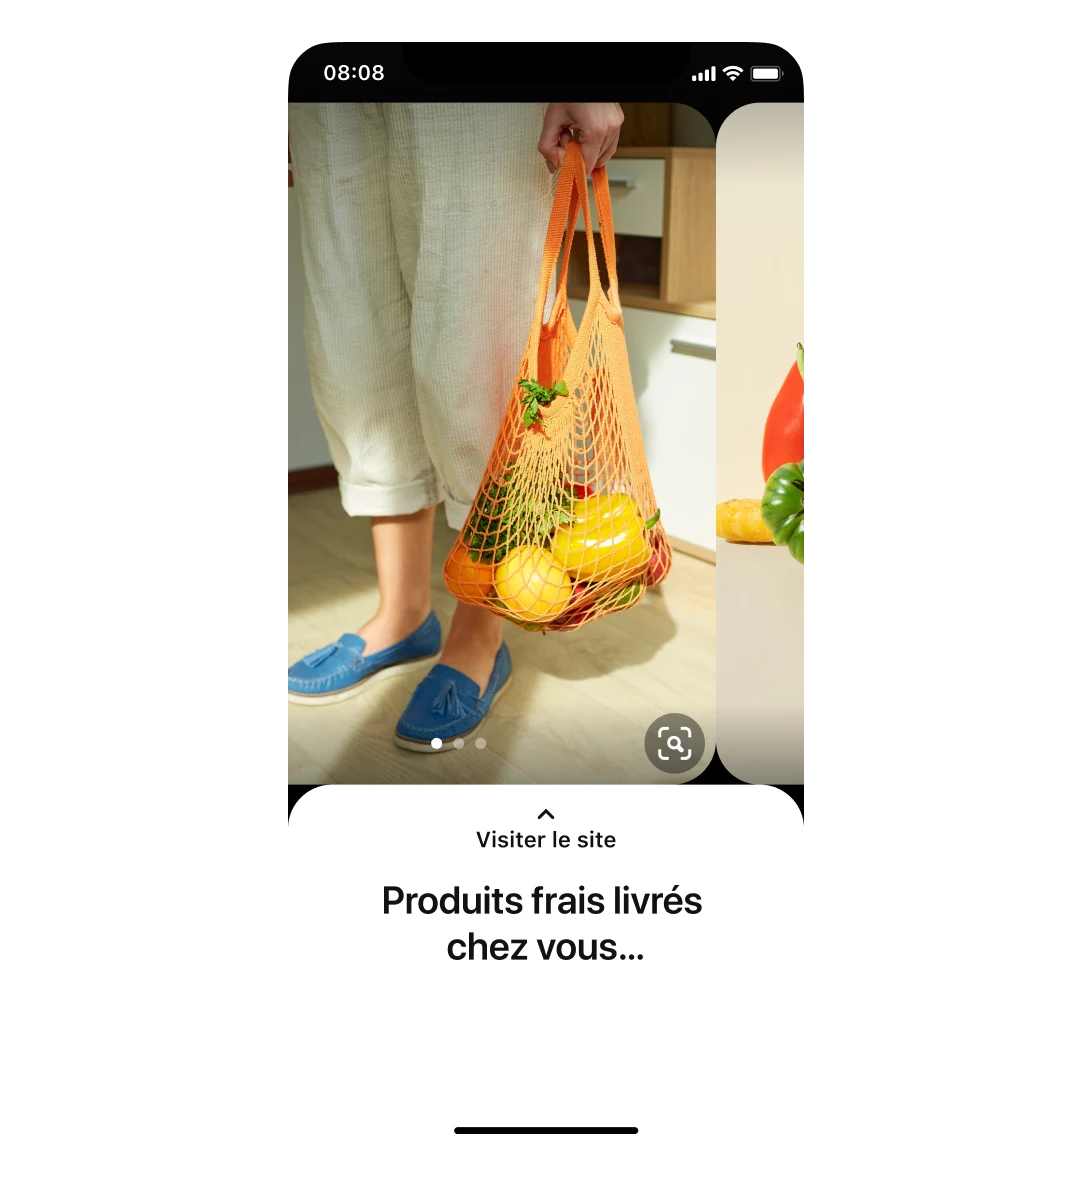 Annonce Épingle carrousel d’une épicerie sur un mobile. Sur la première image, une personne tient un sac de courses. Une partie de la deuxième image (à droite) montre des fruits et des légumes. La légende indique « des produits frais livrés chez vous... »